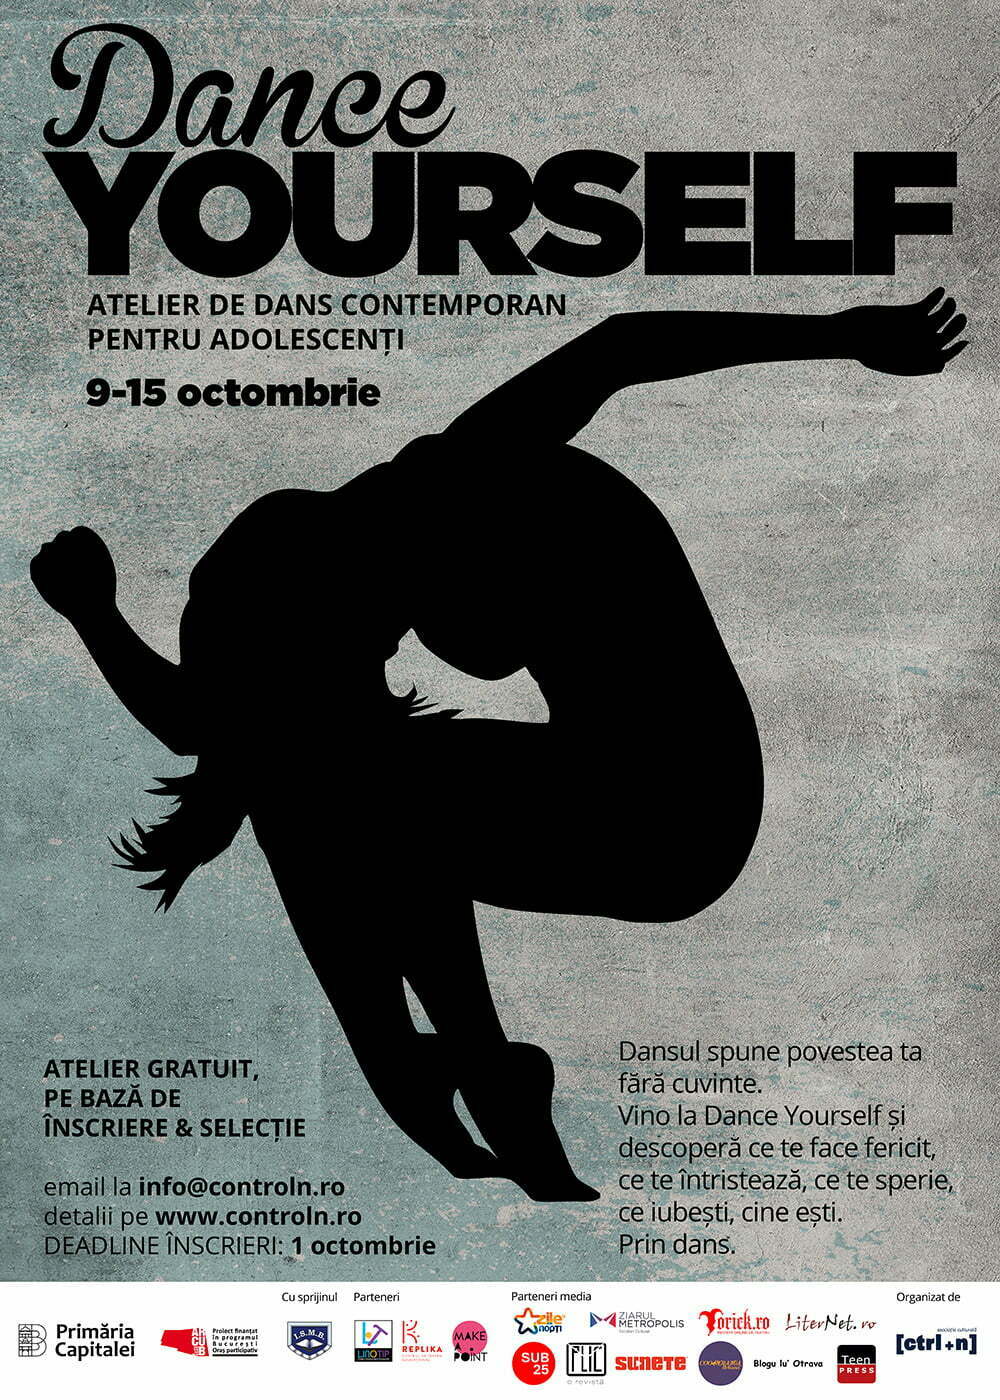 Dance Yourself - atelier de dans contemporan pentru adolescenți